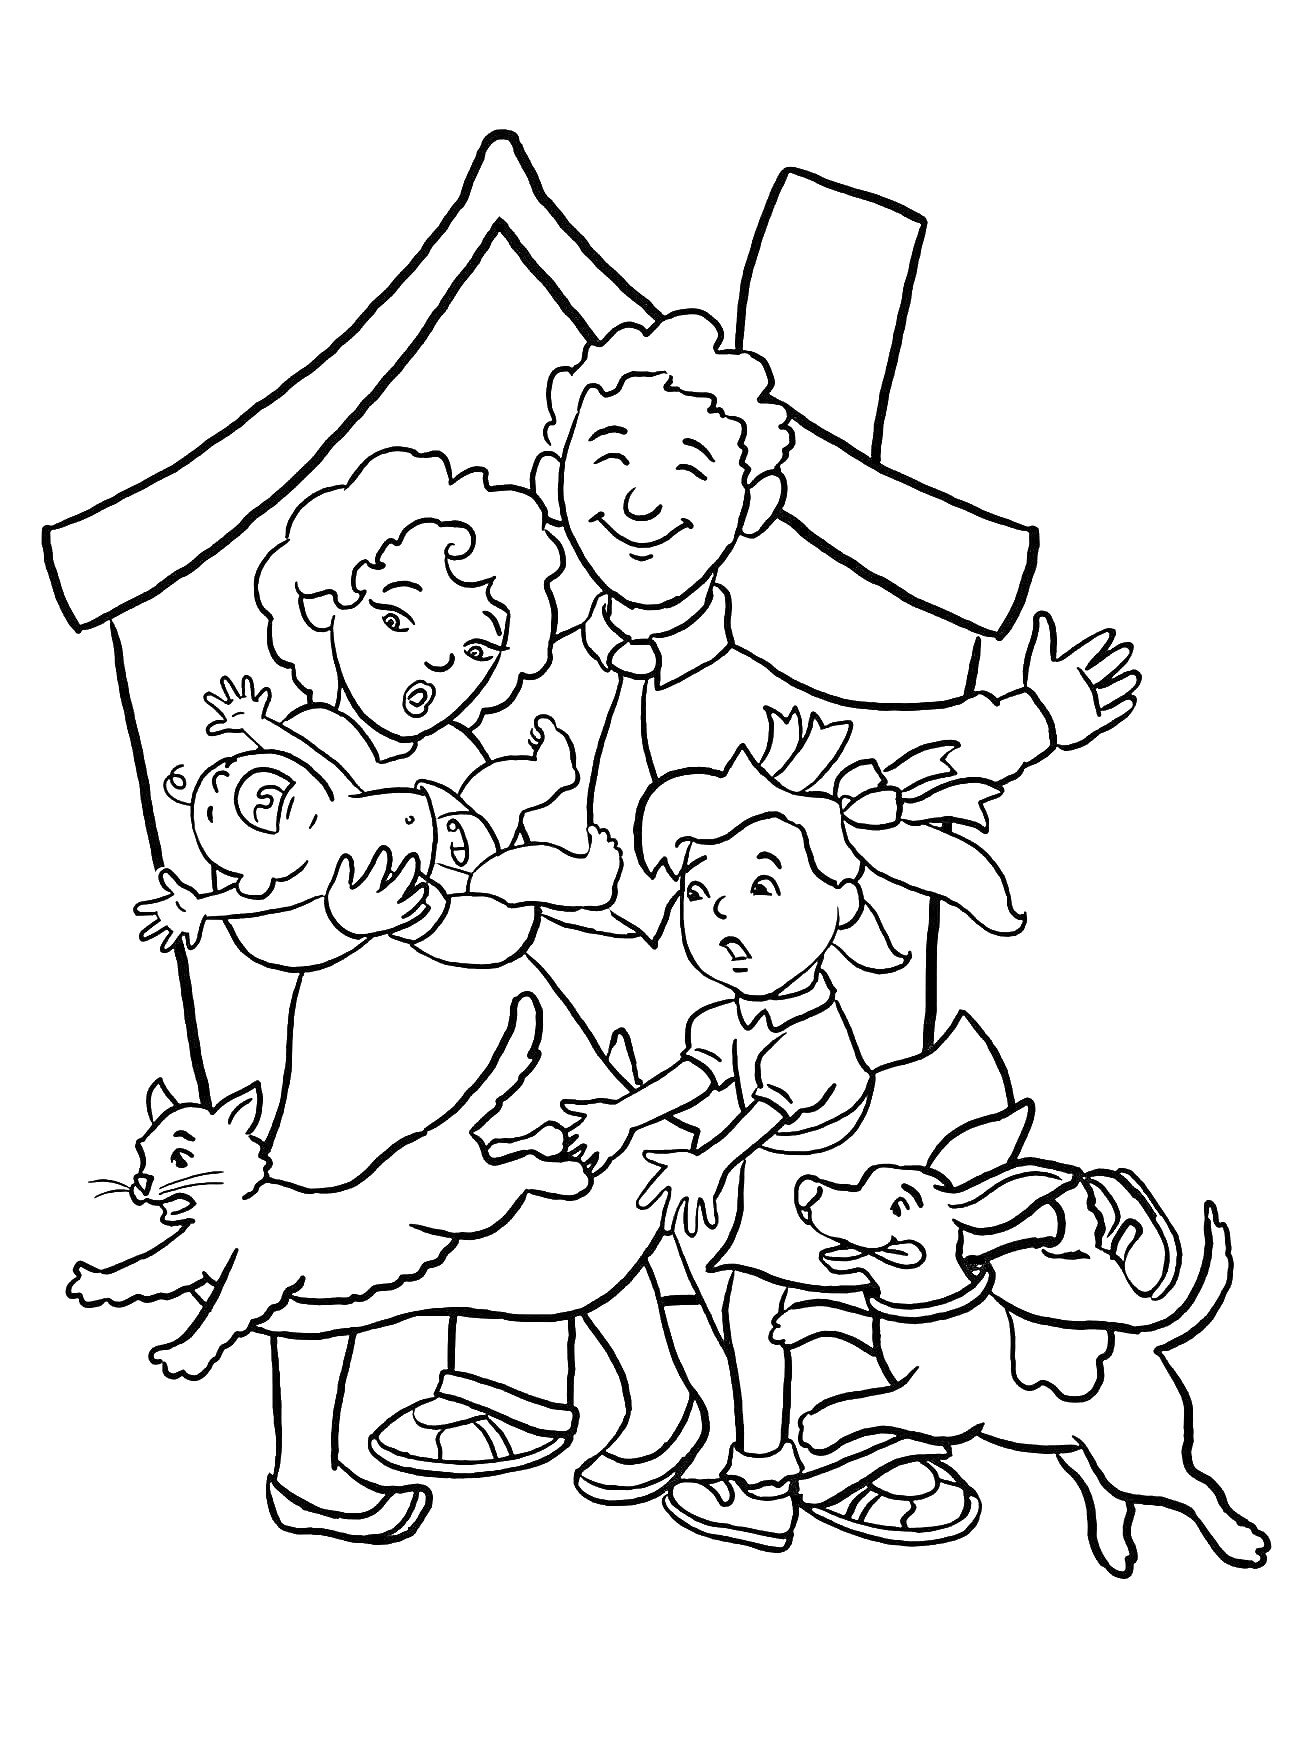 Раскраска Семья с новорожденным ребенком, маленькой девочкой, кошкой и собакой на фоне дома